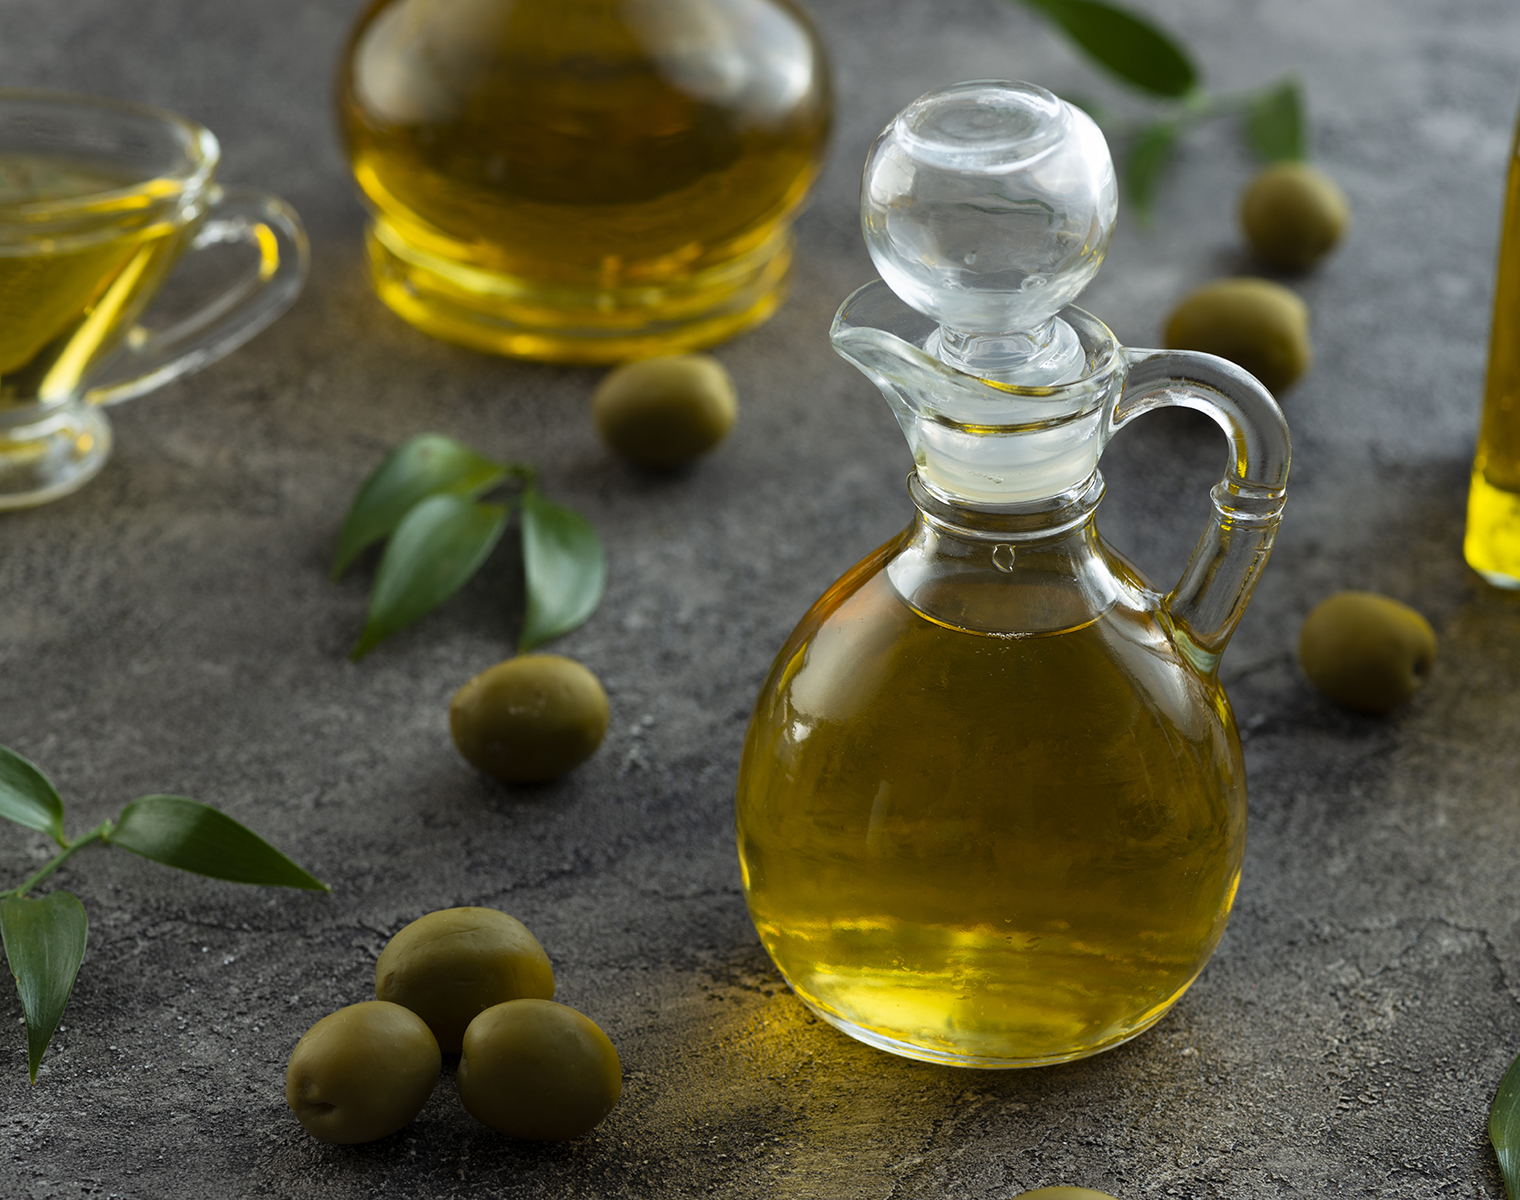 Olivový olej za studena lisovaný